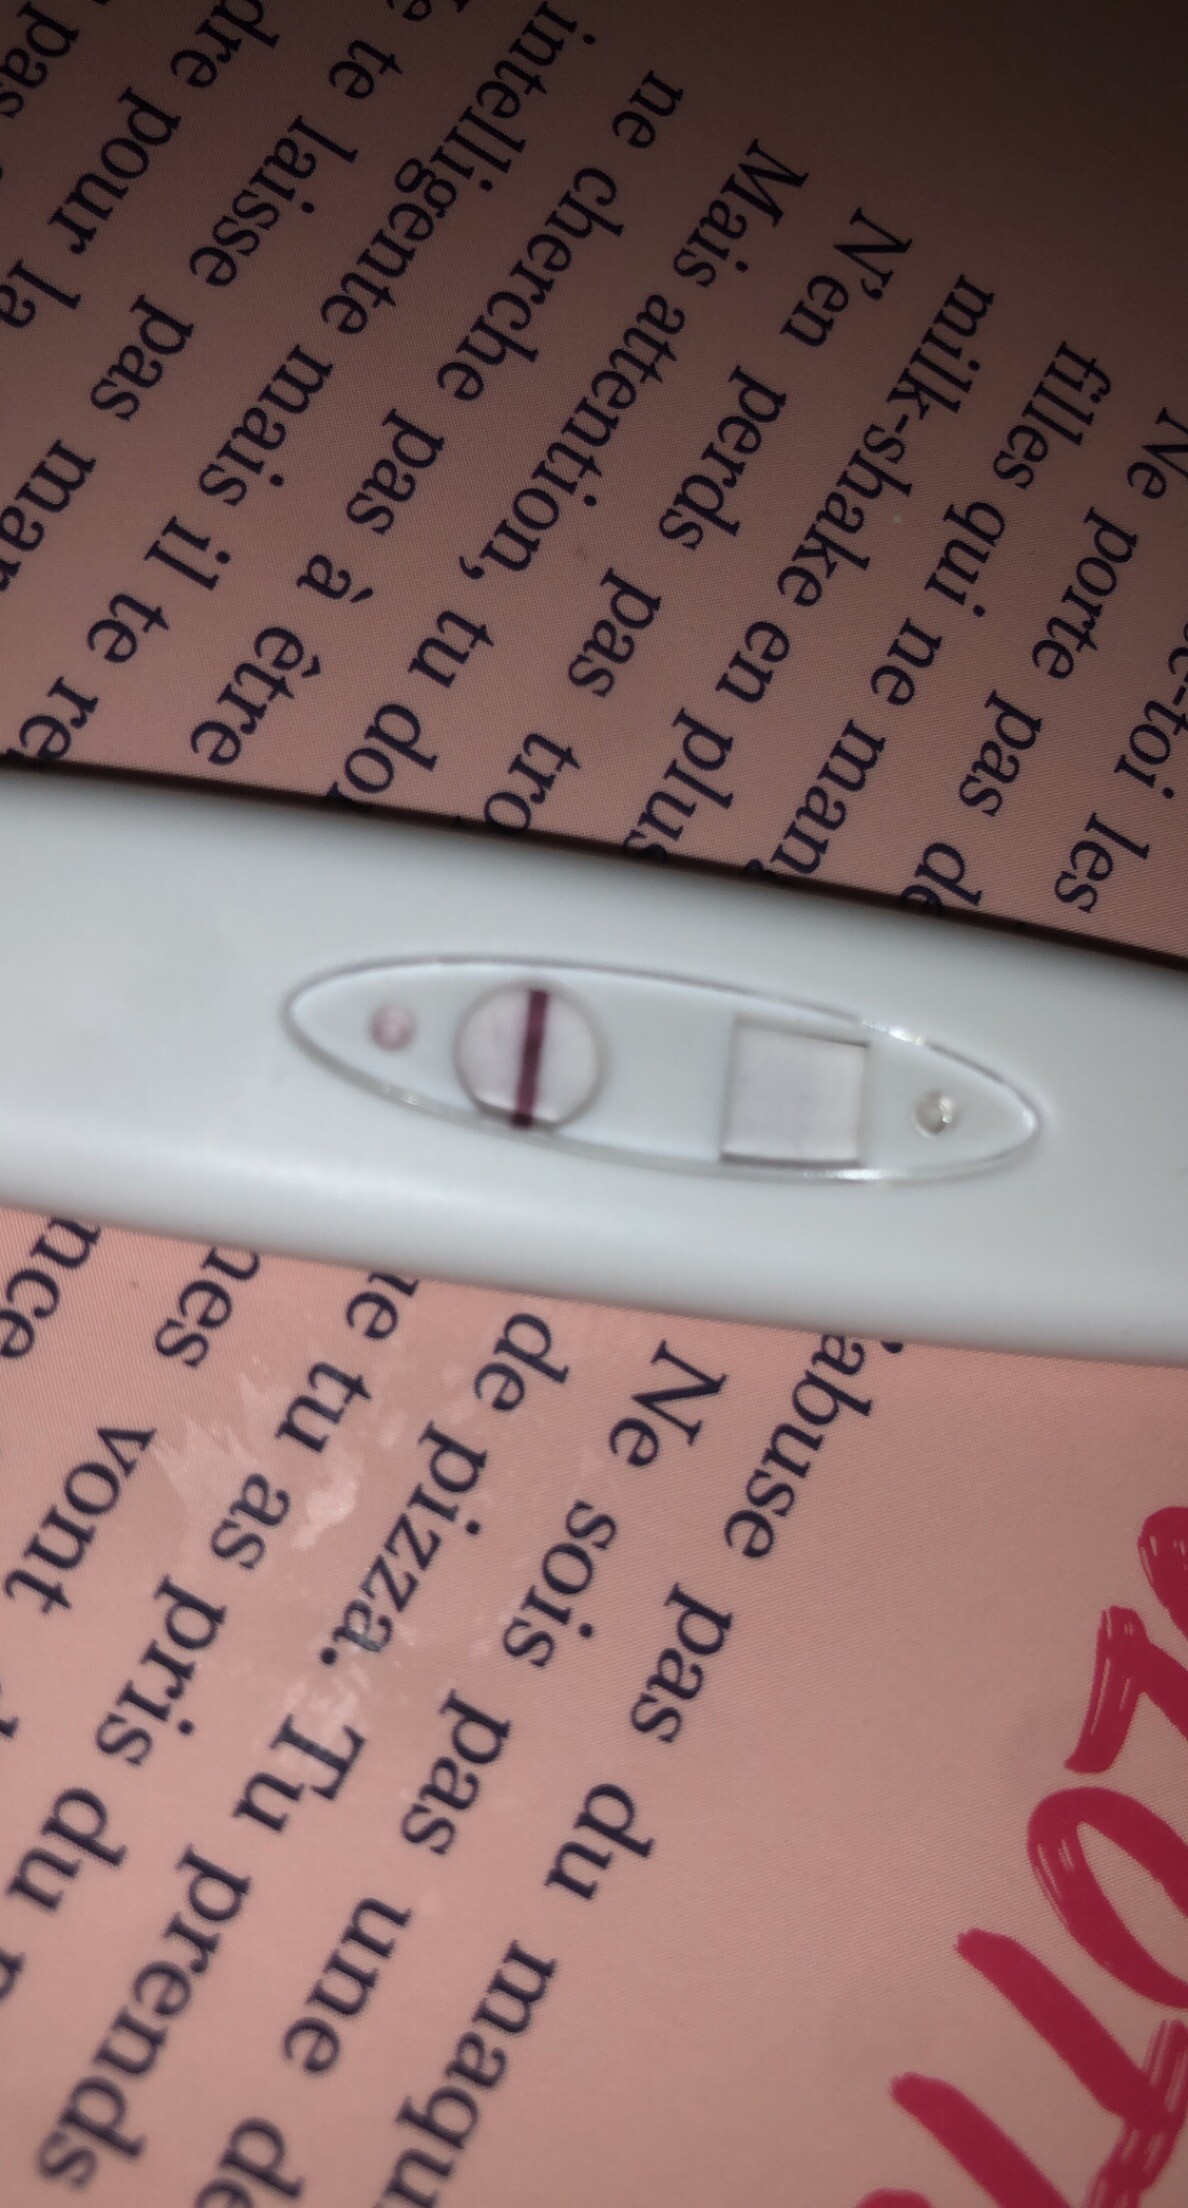 Test de grossesse 14 dpo très clair - Tests et symptômes de ...